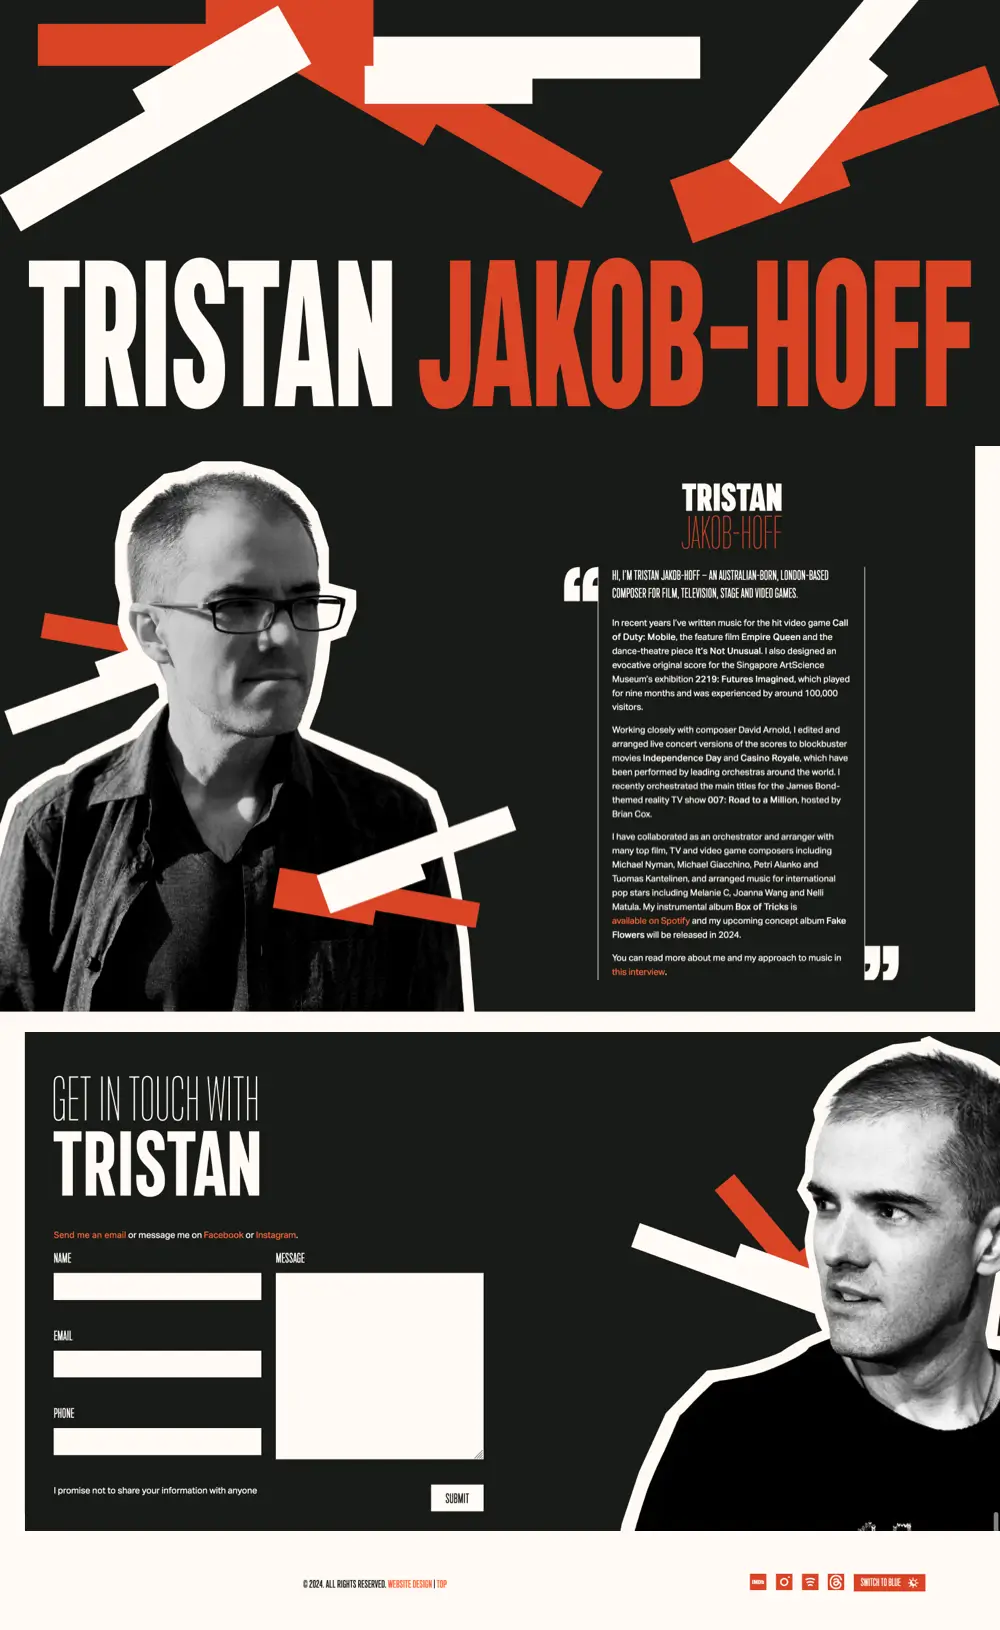 Tristan Jakob-Hoff website